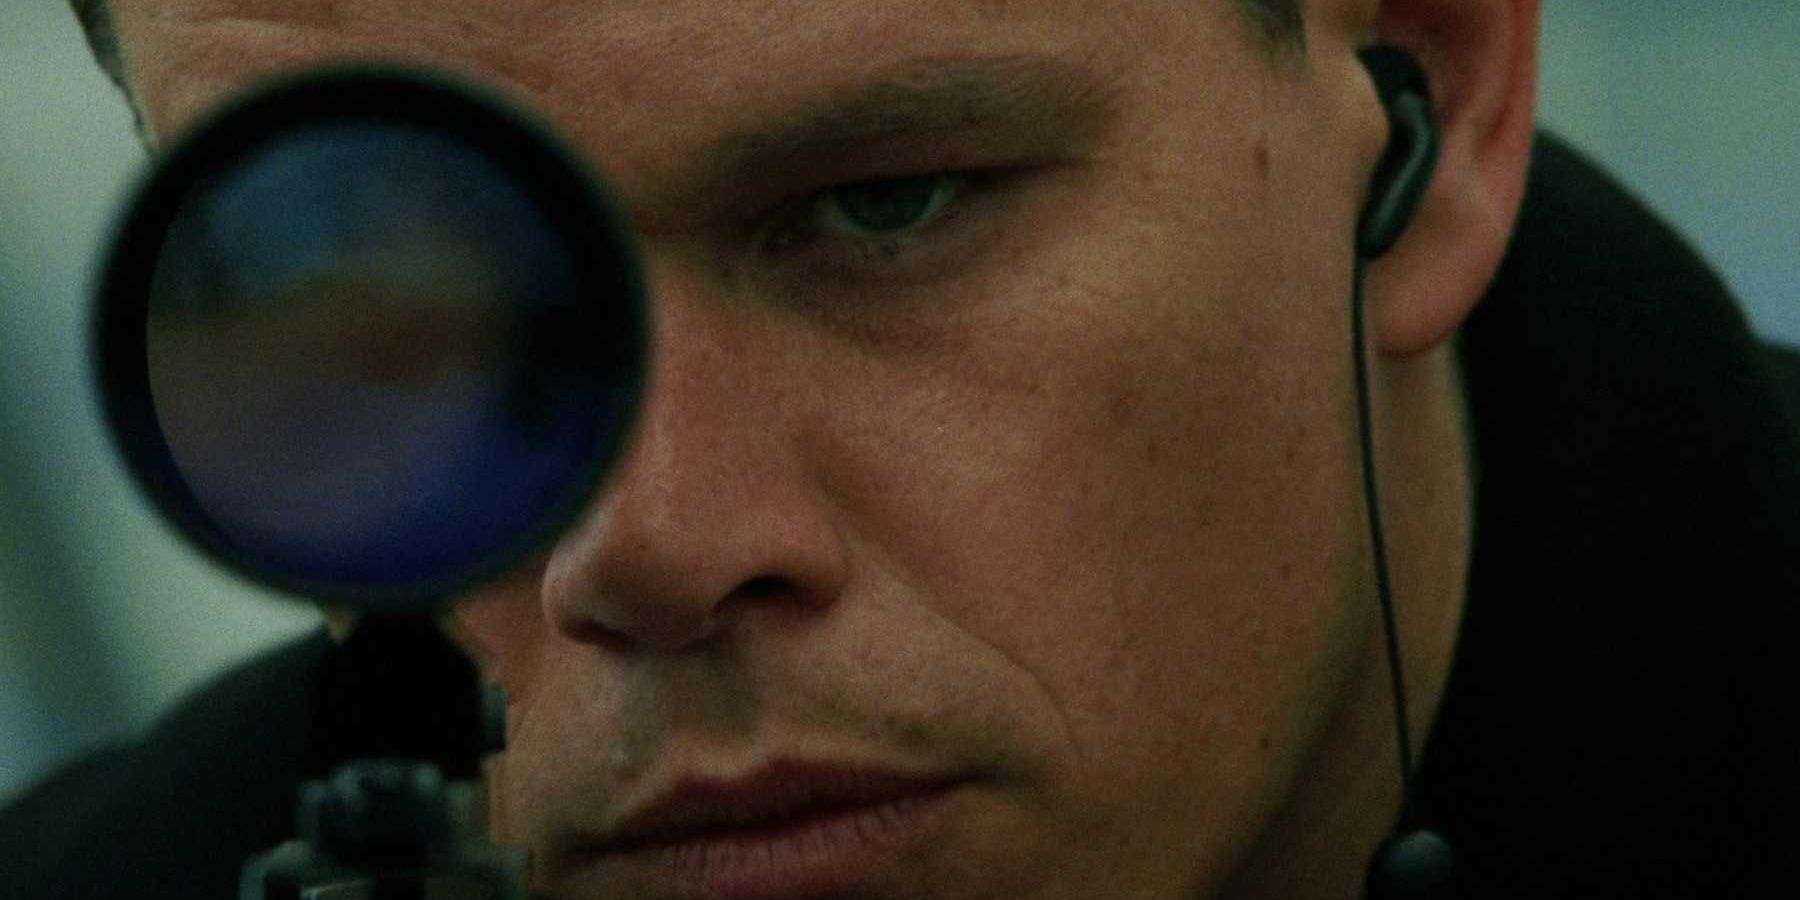 Jason Bourne aiming a gun.